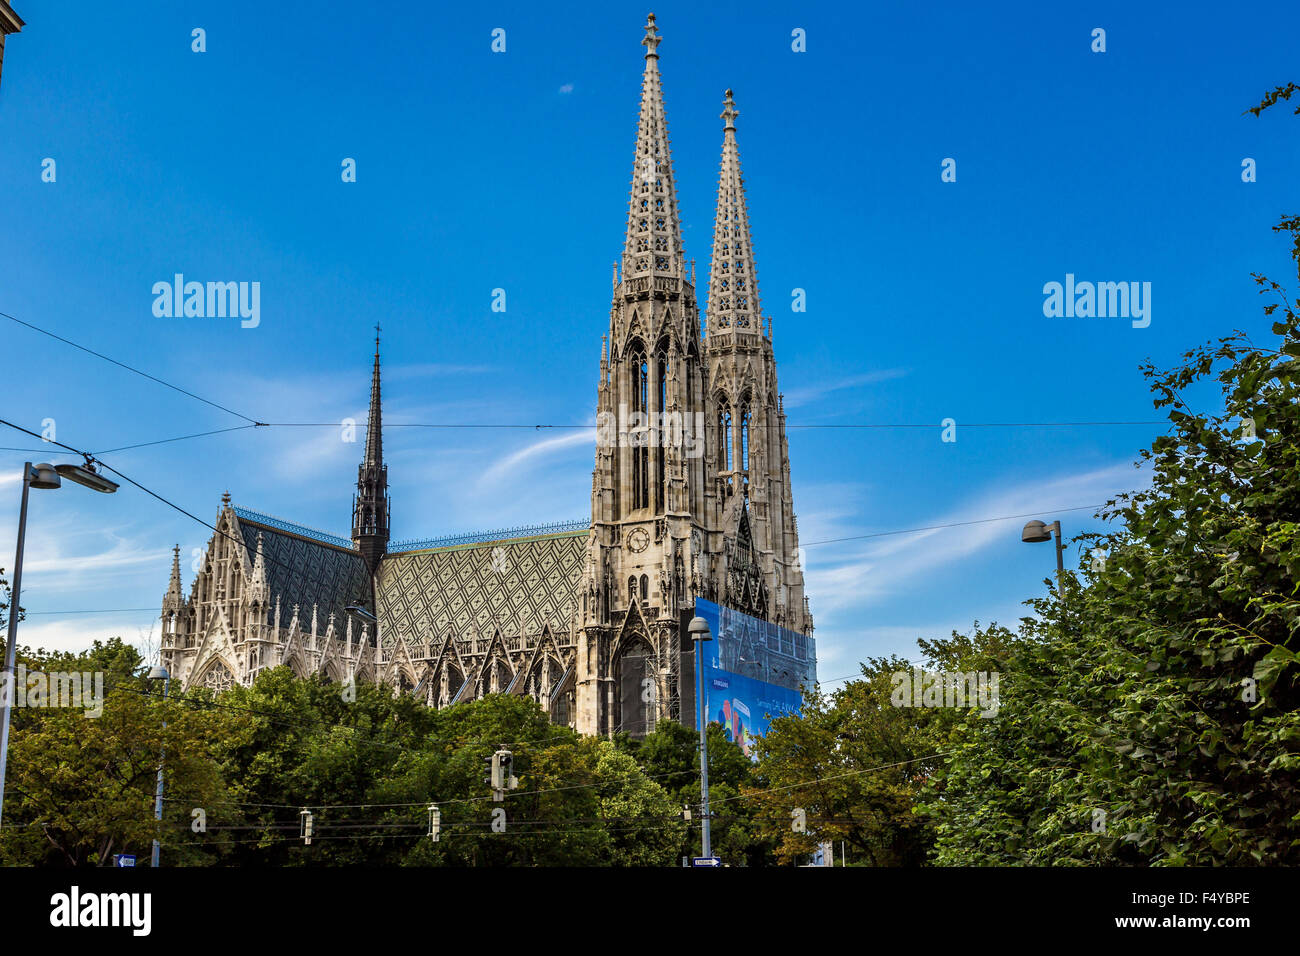 Wien - 22 Juli: The Votiv Churchis eine neugotische Kirche befindet sich auf der Ringstra? e in Wien. Nach der versuchten Stockfoto